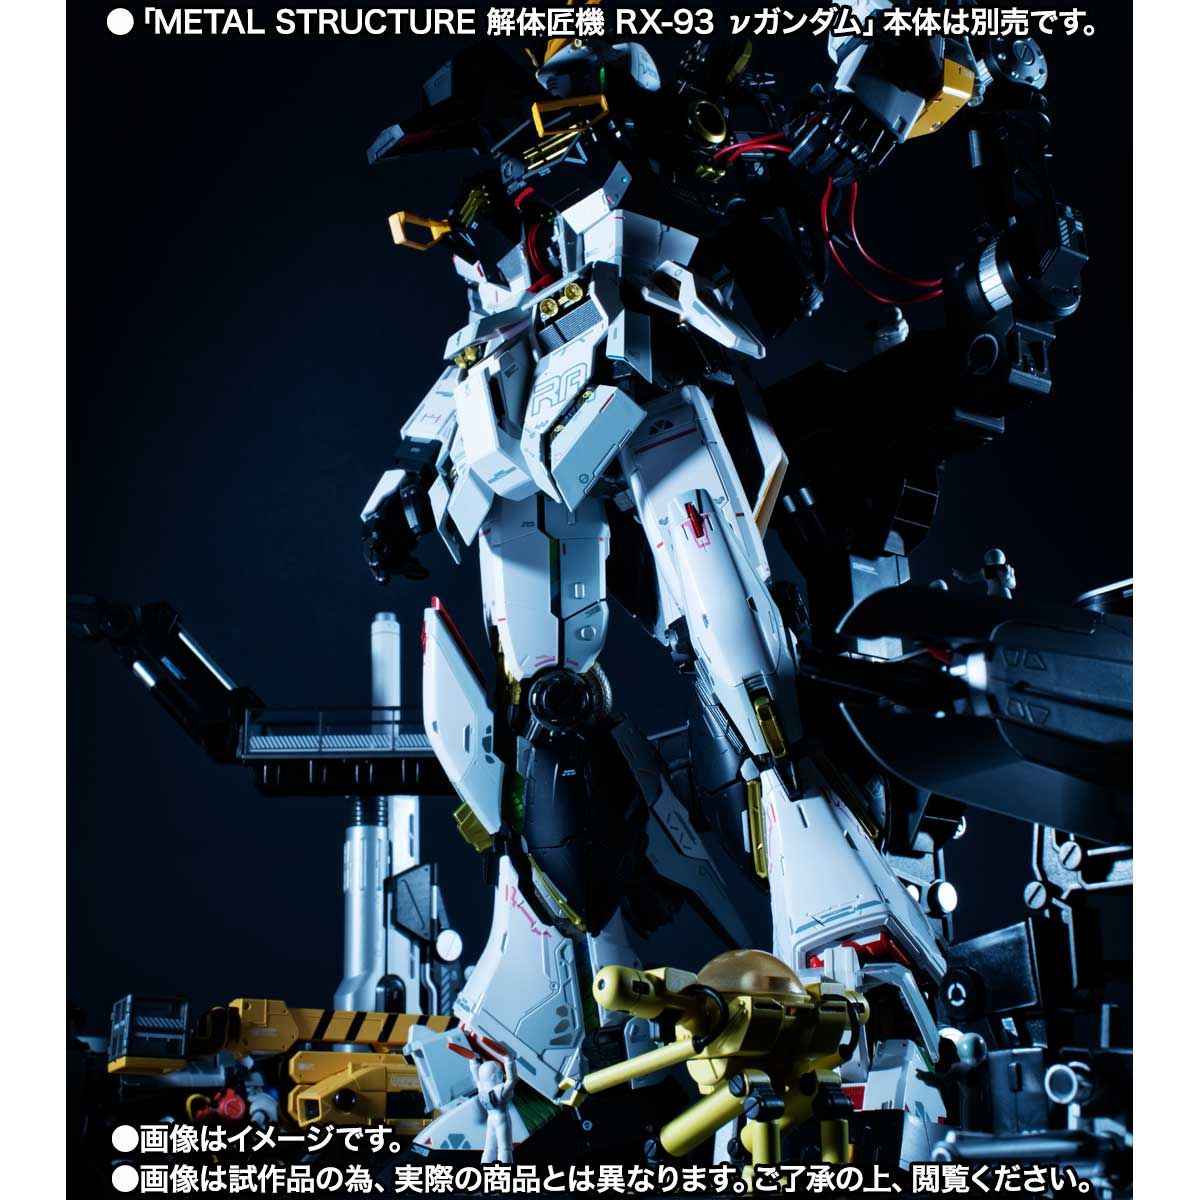 【限定販売】METAL STRUCTURE 解体匠機 RX-93 νガンダム専用オプションパーツ『ロンド・ベルエンジニアズ』セット-006